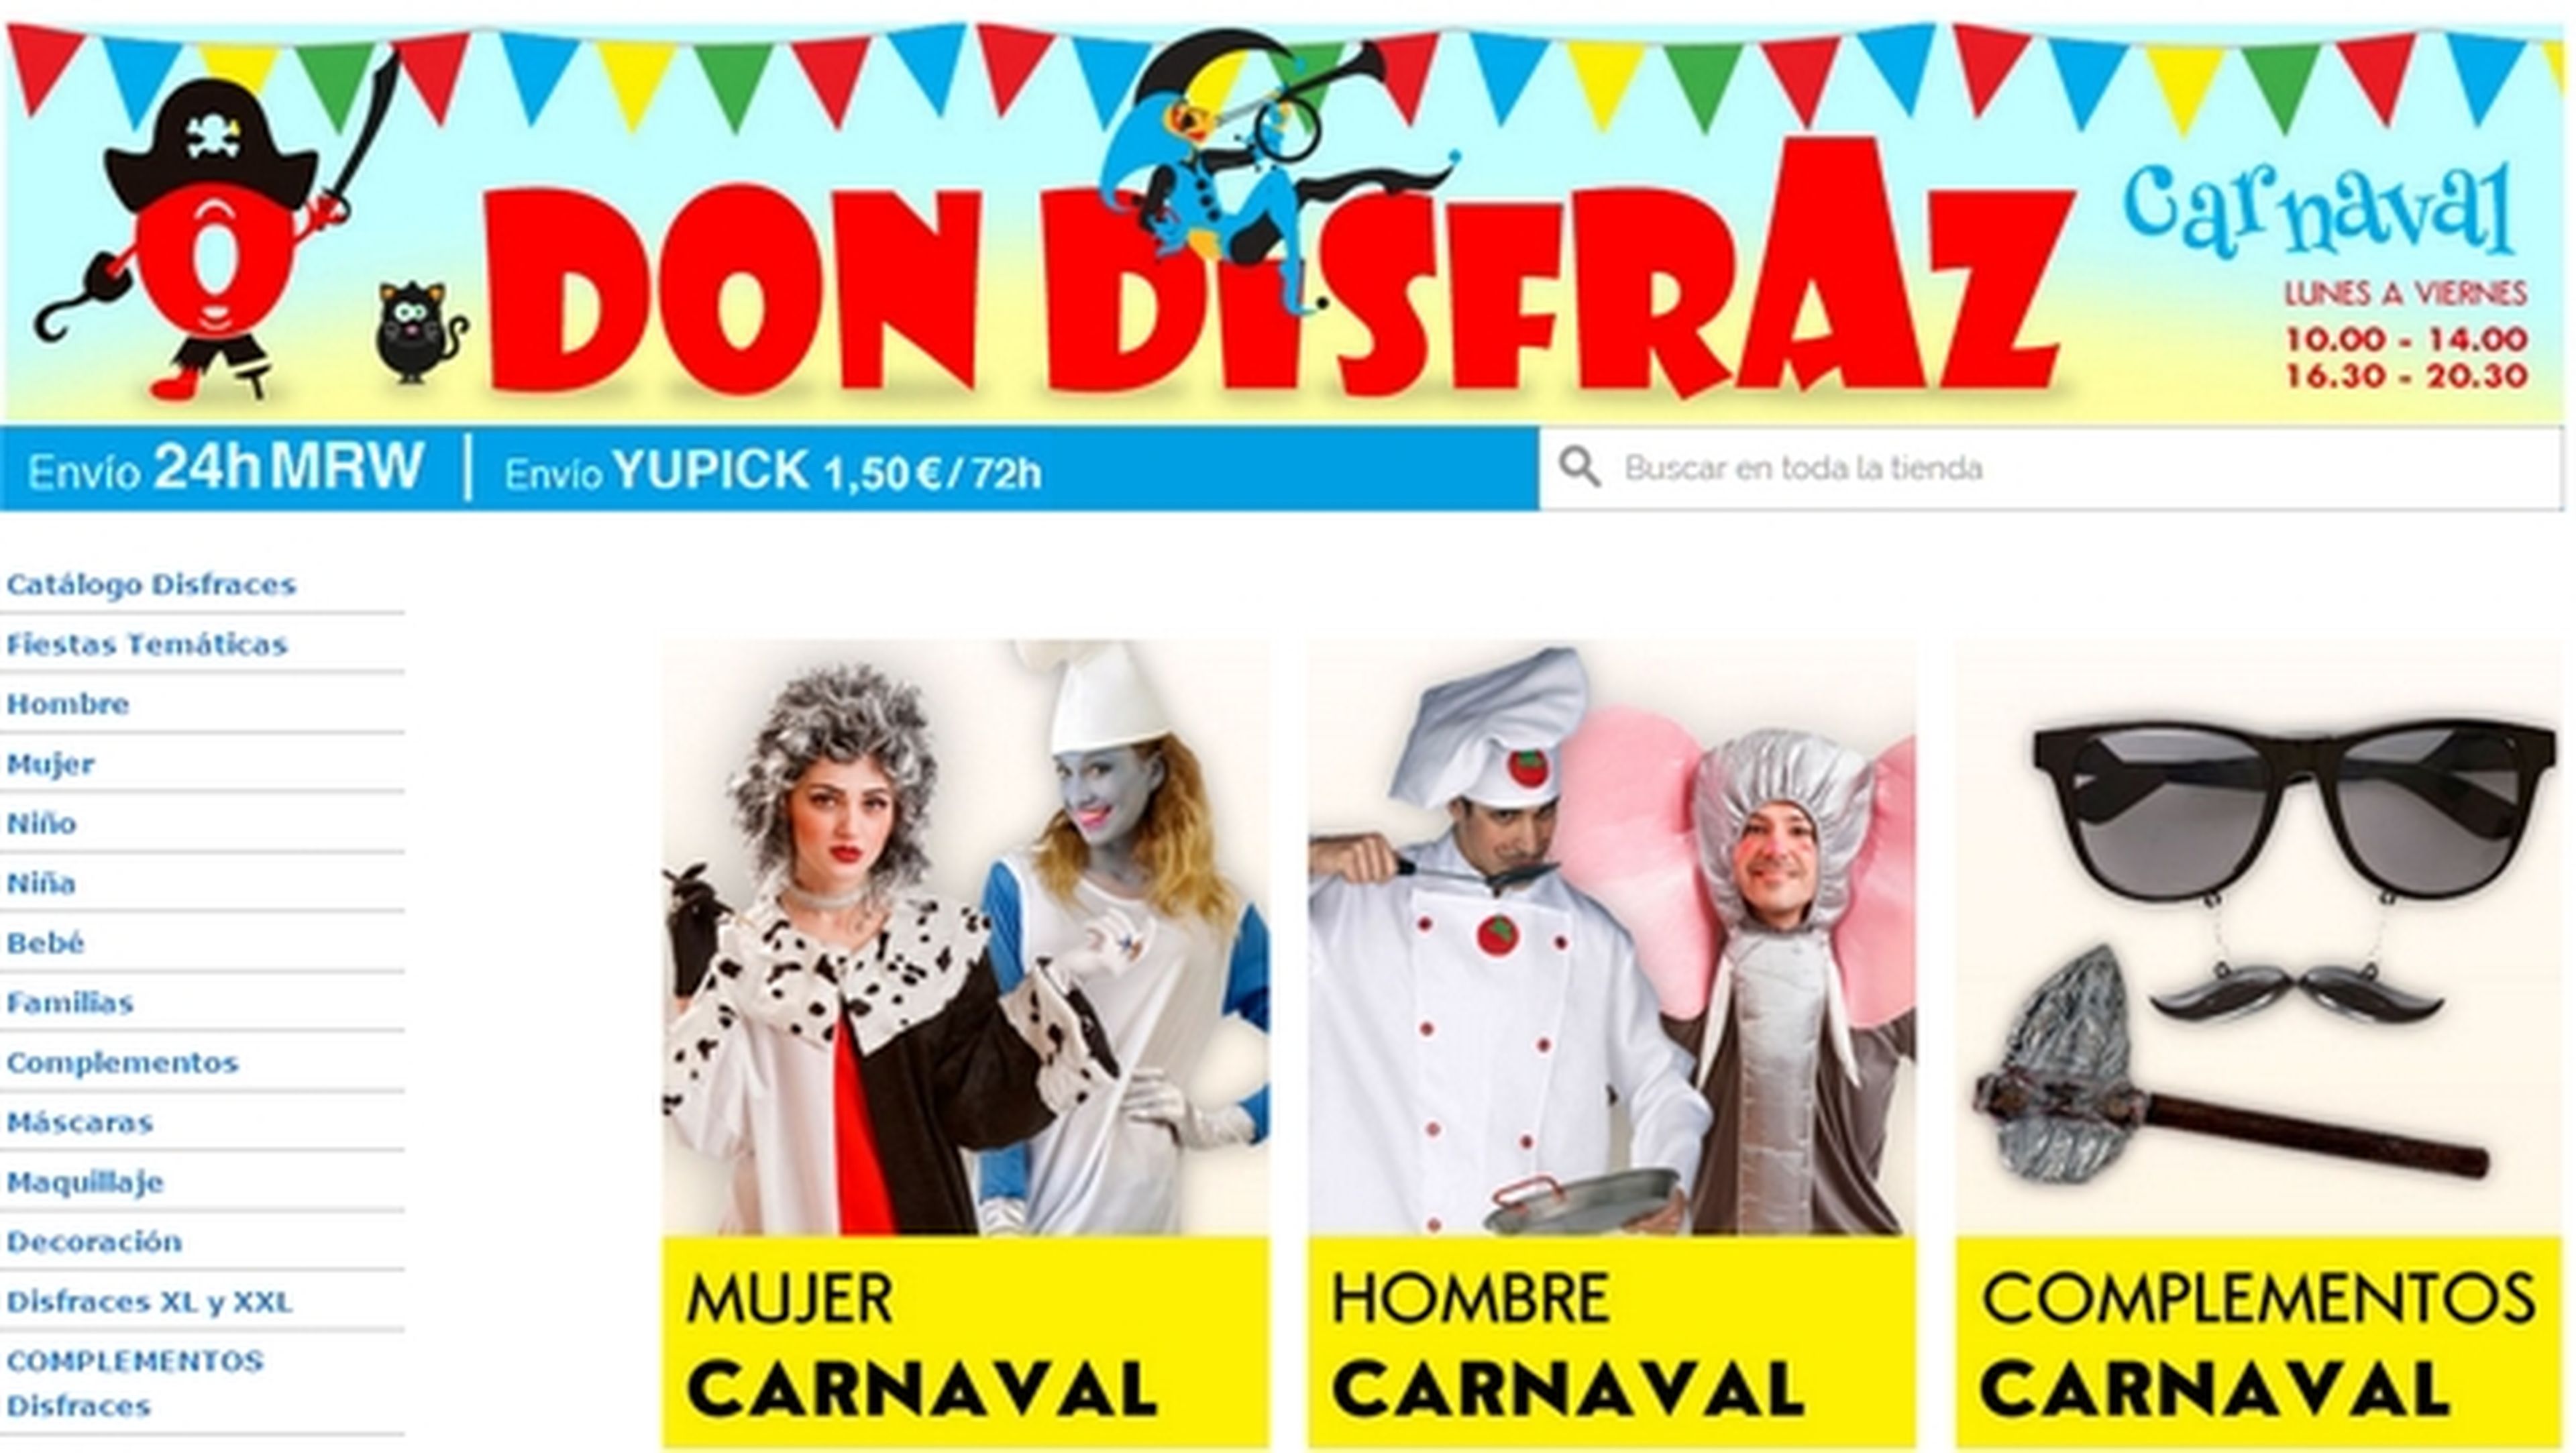 Las mejores tiendas de disfraces baratos de Carnaval 2017